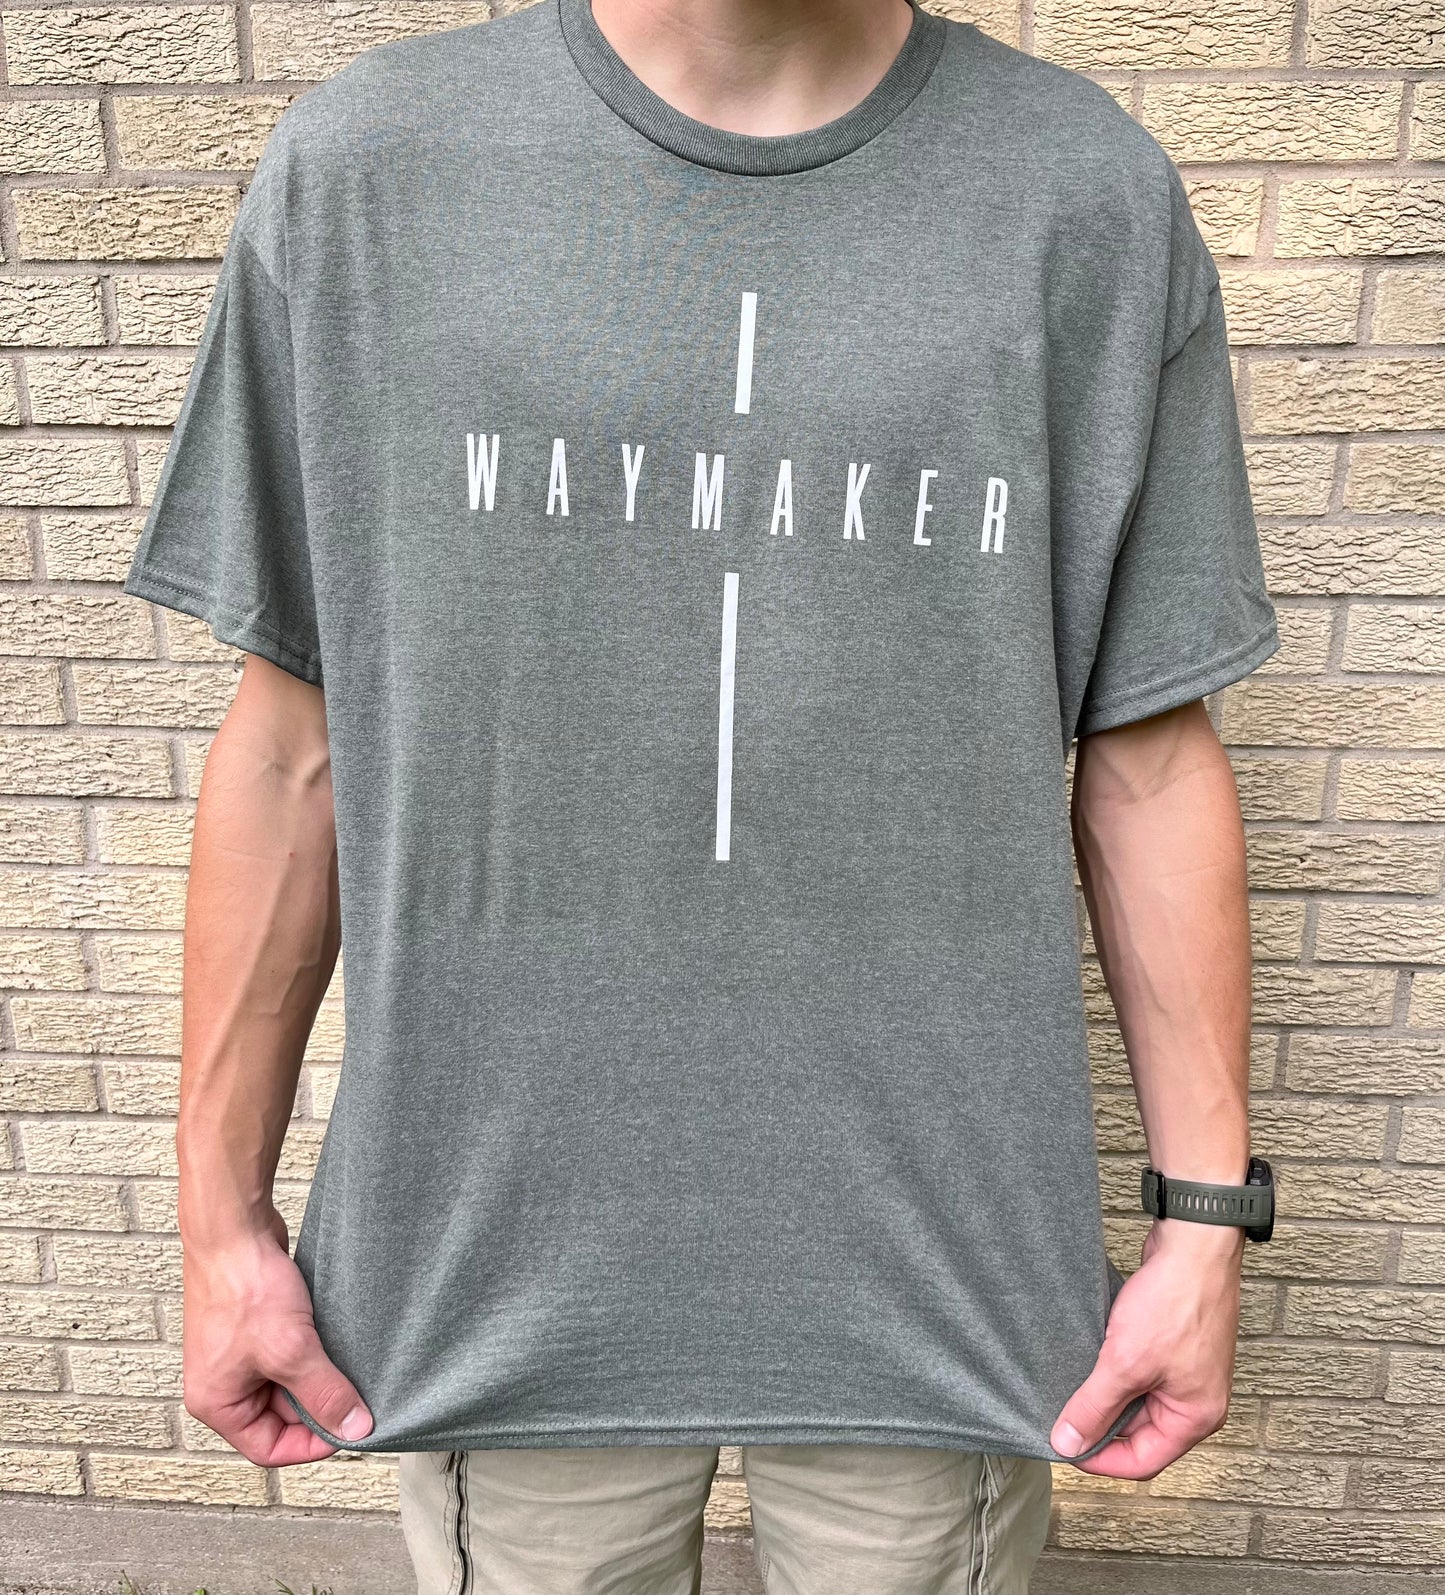 Waymaker Shirt